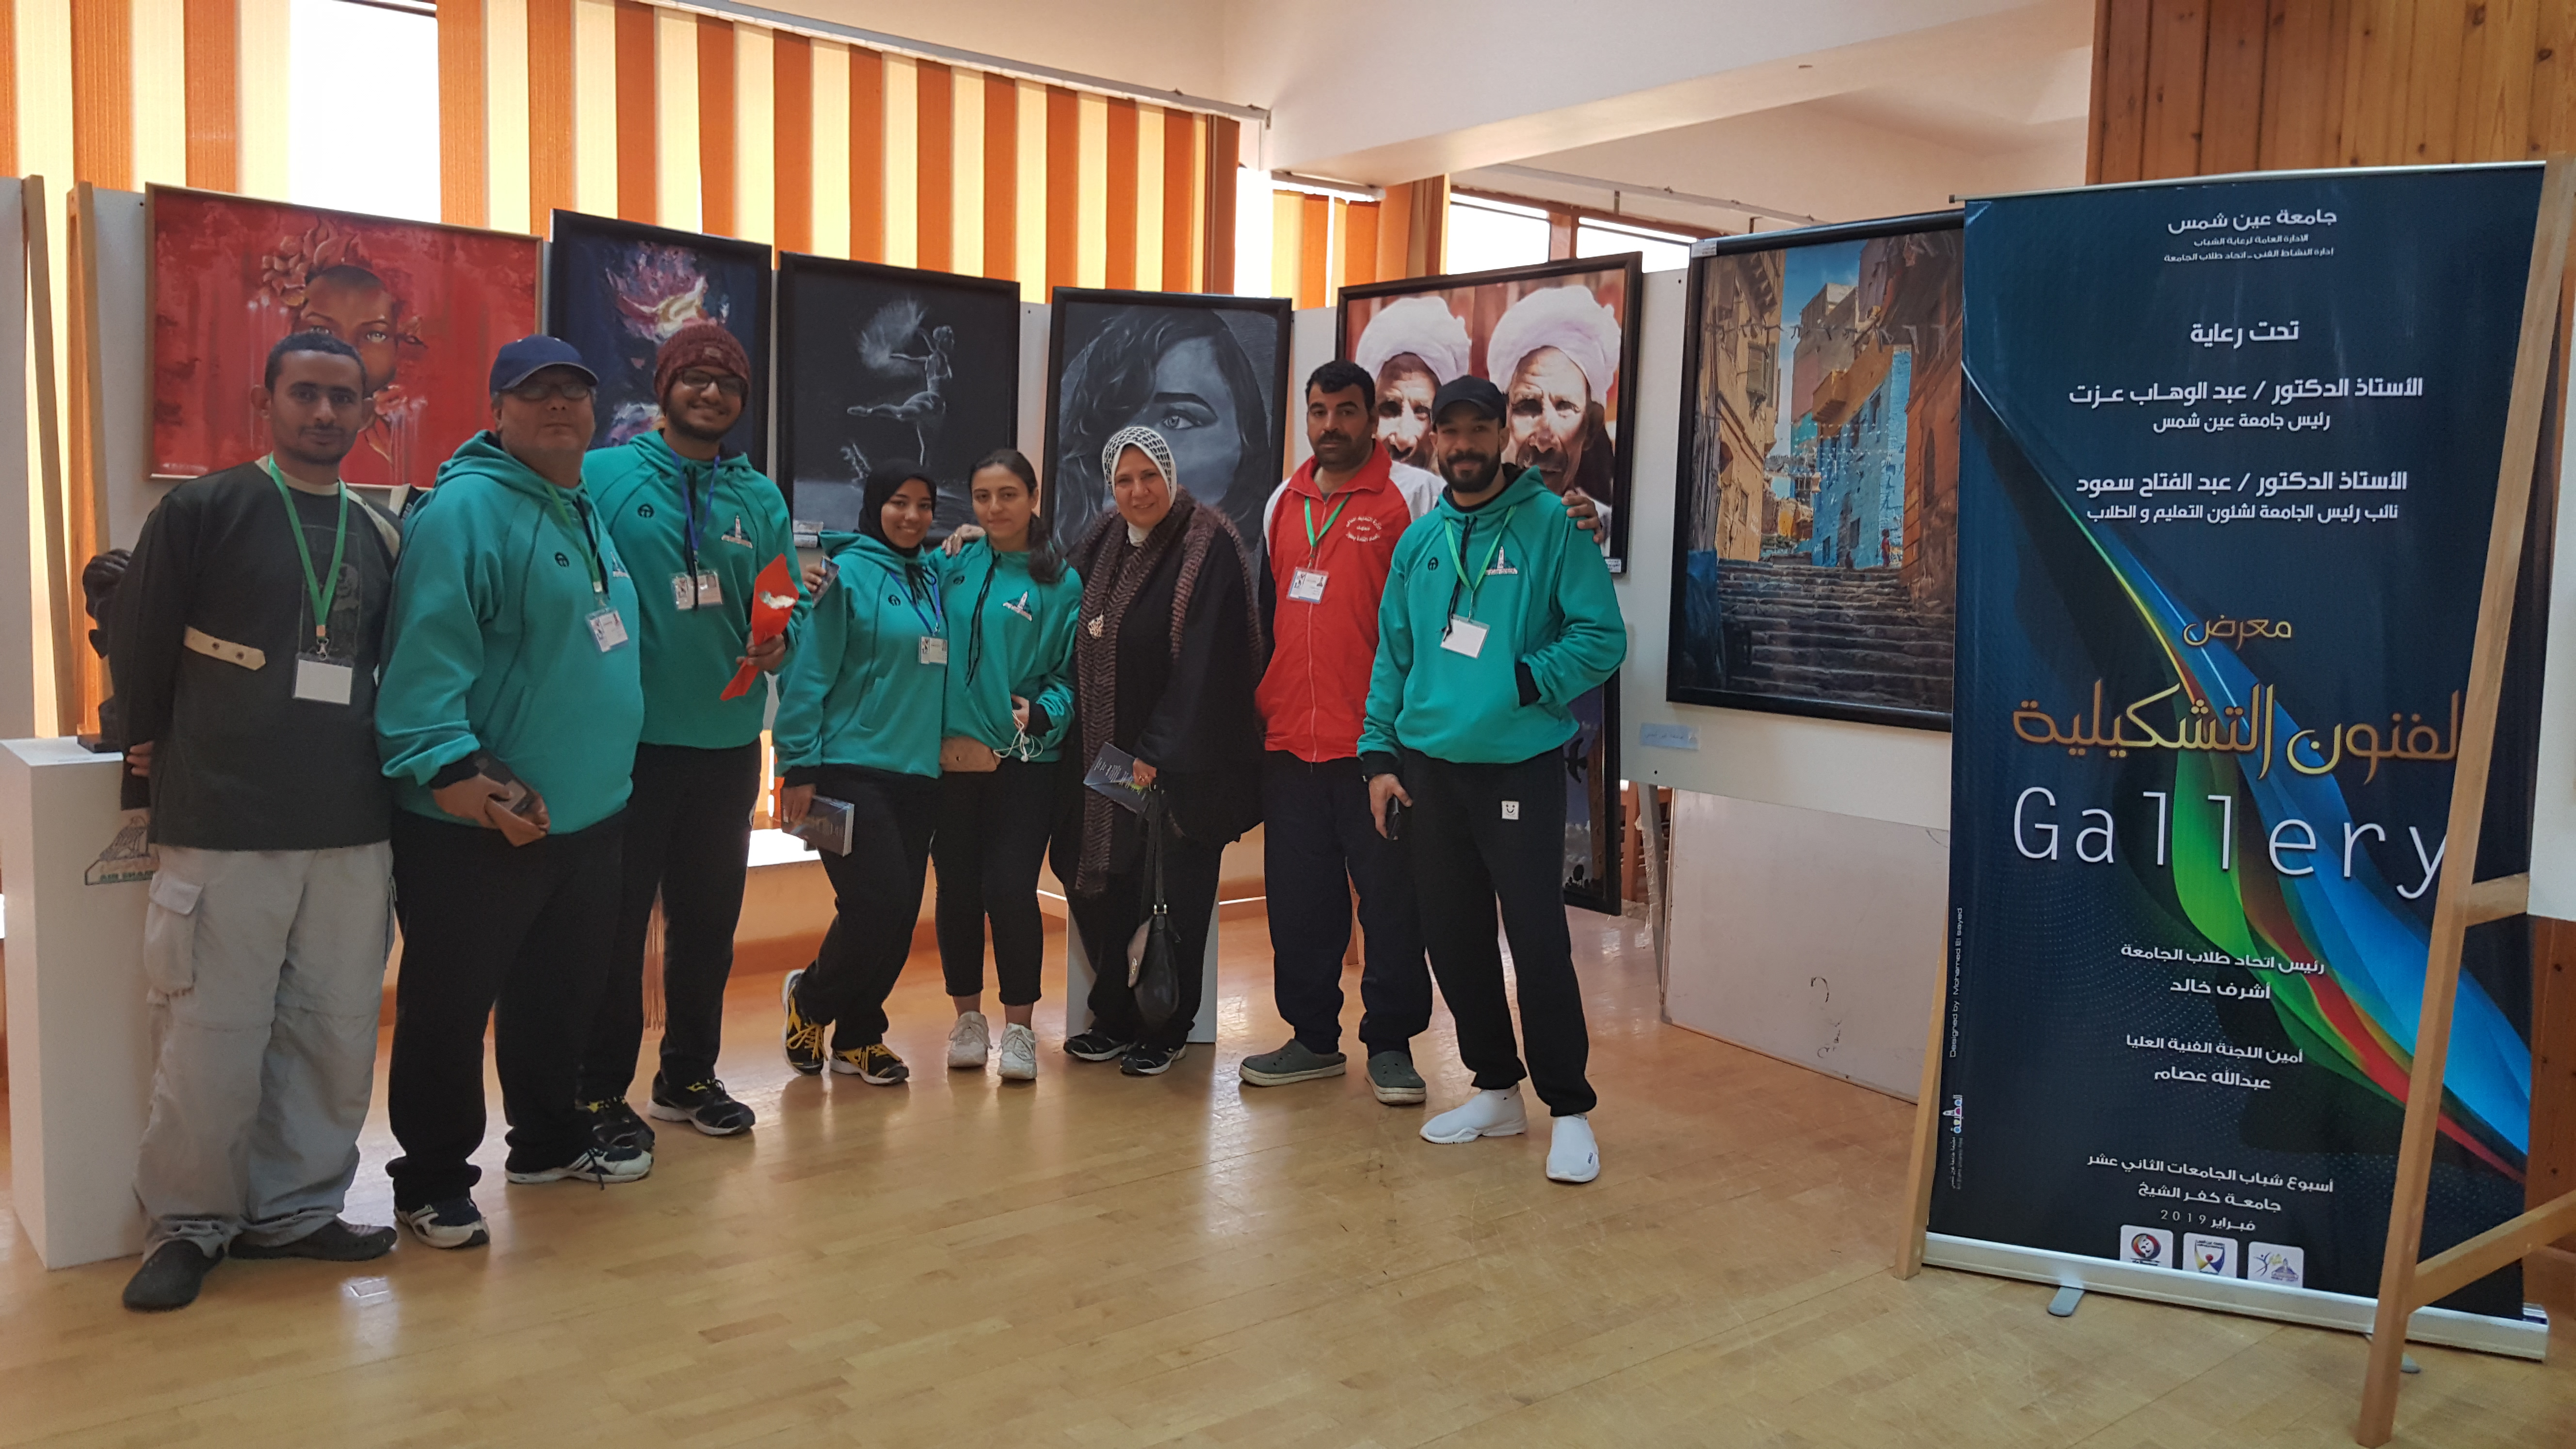 فوز جامعة عين شمس بالمركز الثالث فى مسابقة الفنون التشكيلية لغير المتخصصين فى التصوير